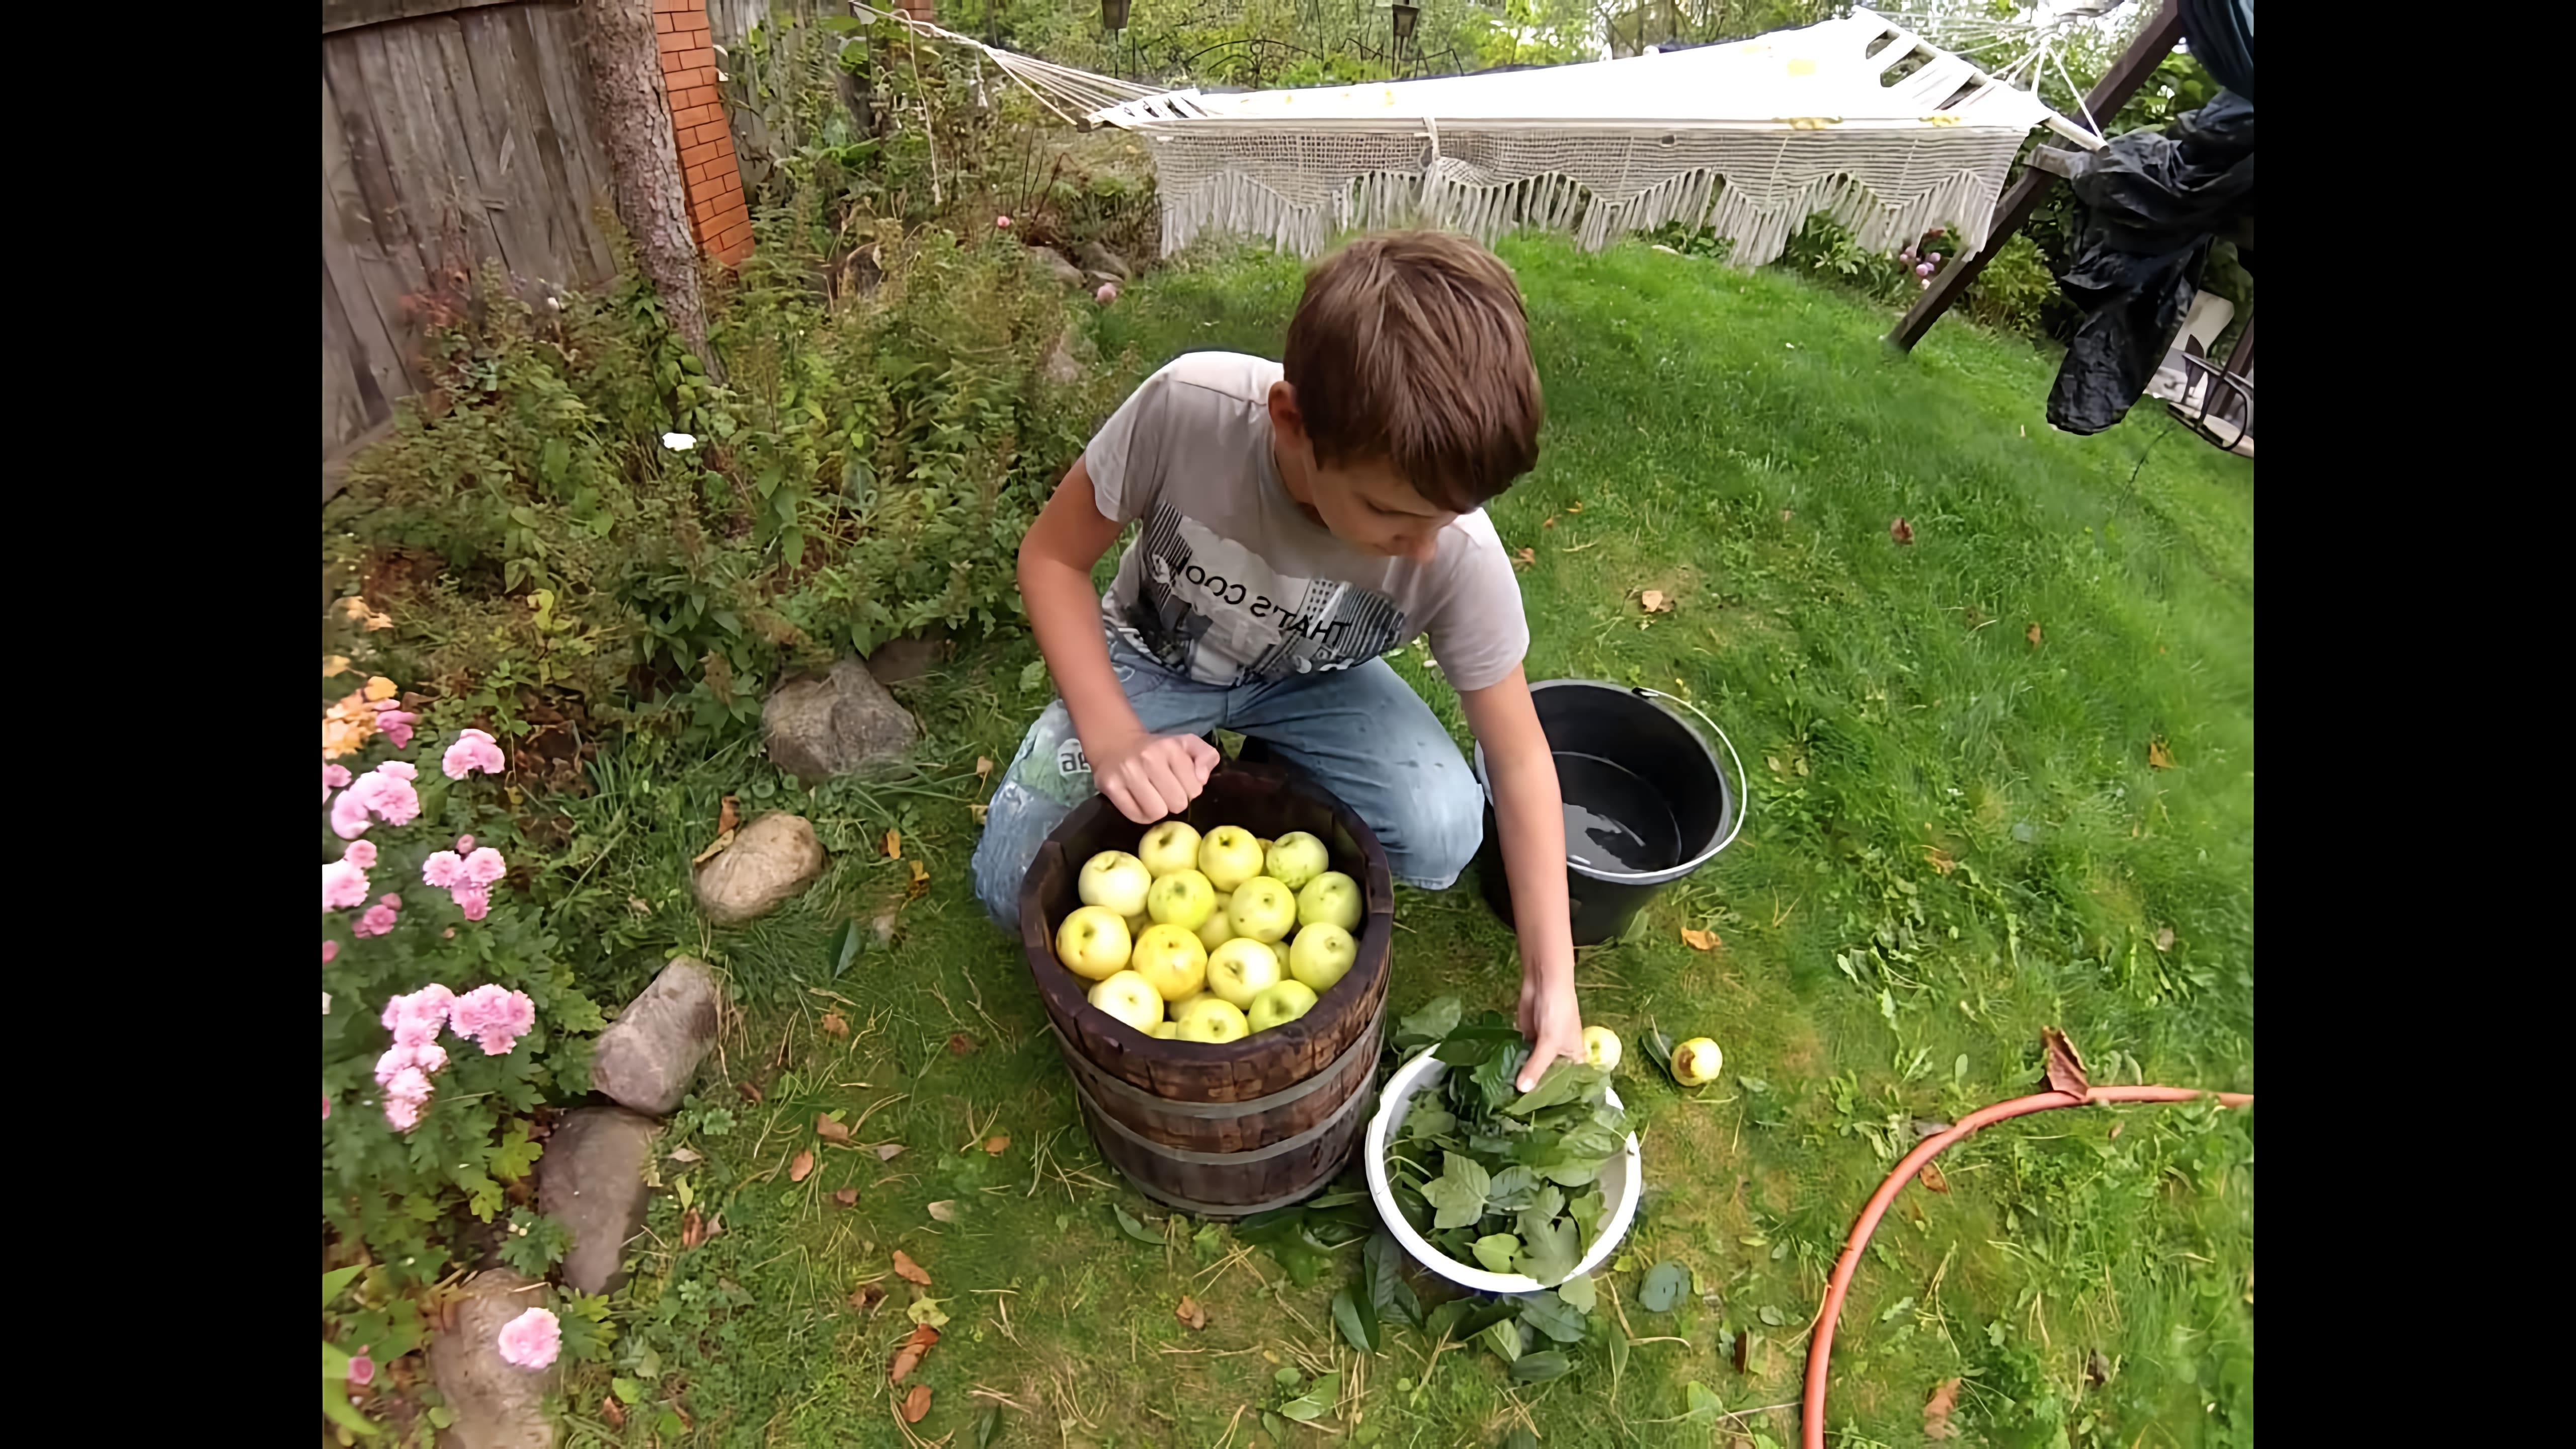 Мочёные яблоки - это старинный рецепт, который использовался в России для сохранения яблок на зиму